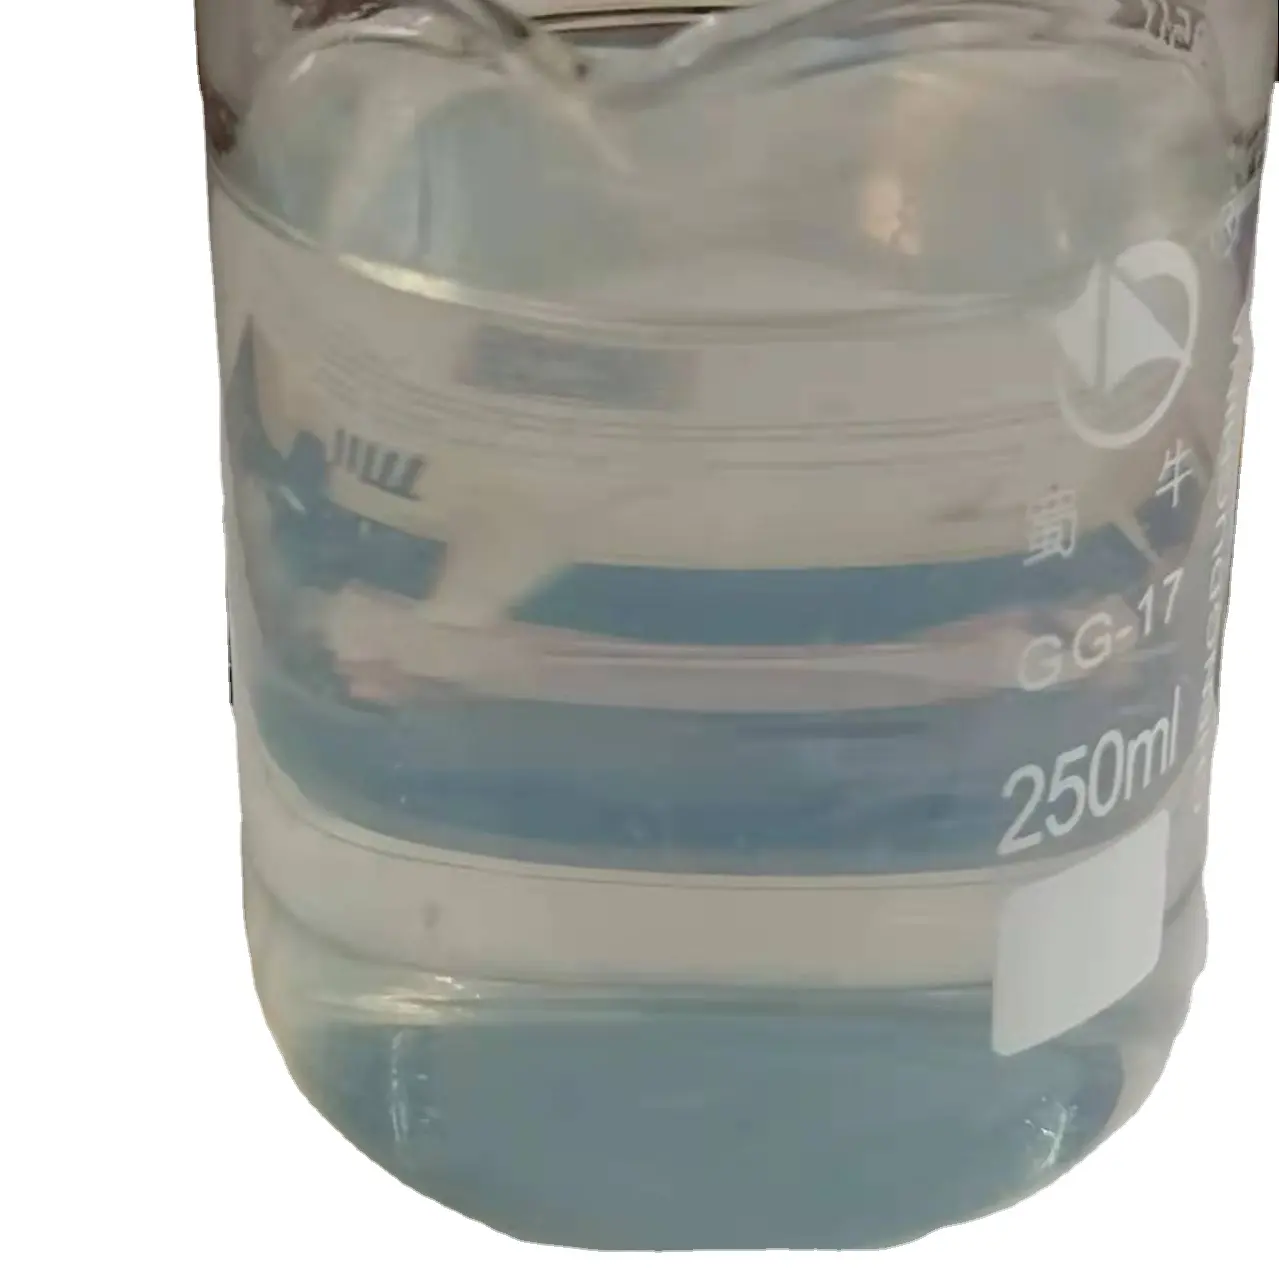 नैनो तरल चीनी मिट्टी की परत ग्लास sio2 रासायनिक सफाई के लिए टाइल्स संगमरमर टाइल पोलिश रासायनिक